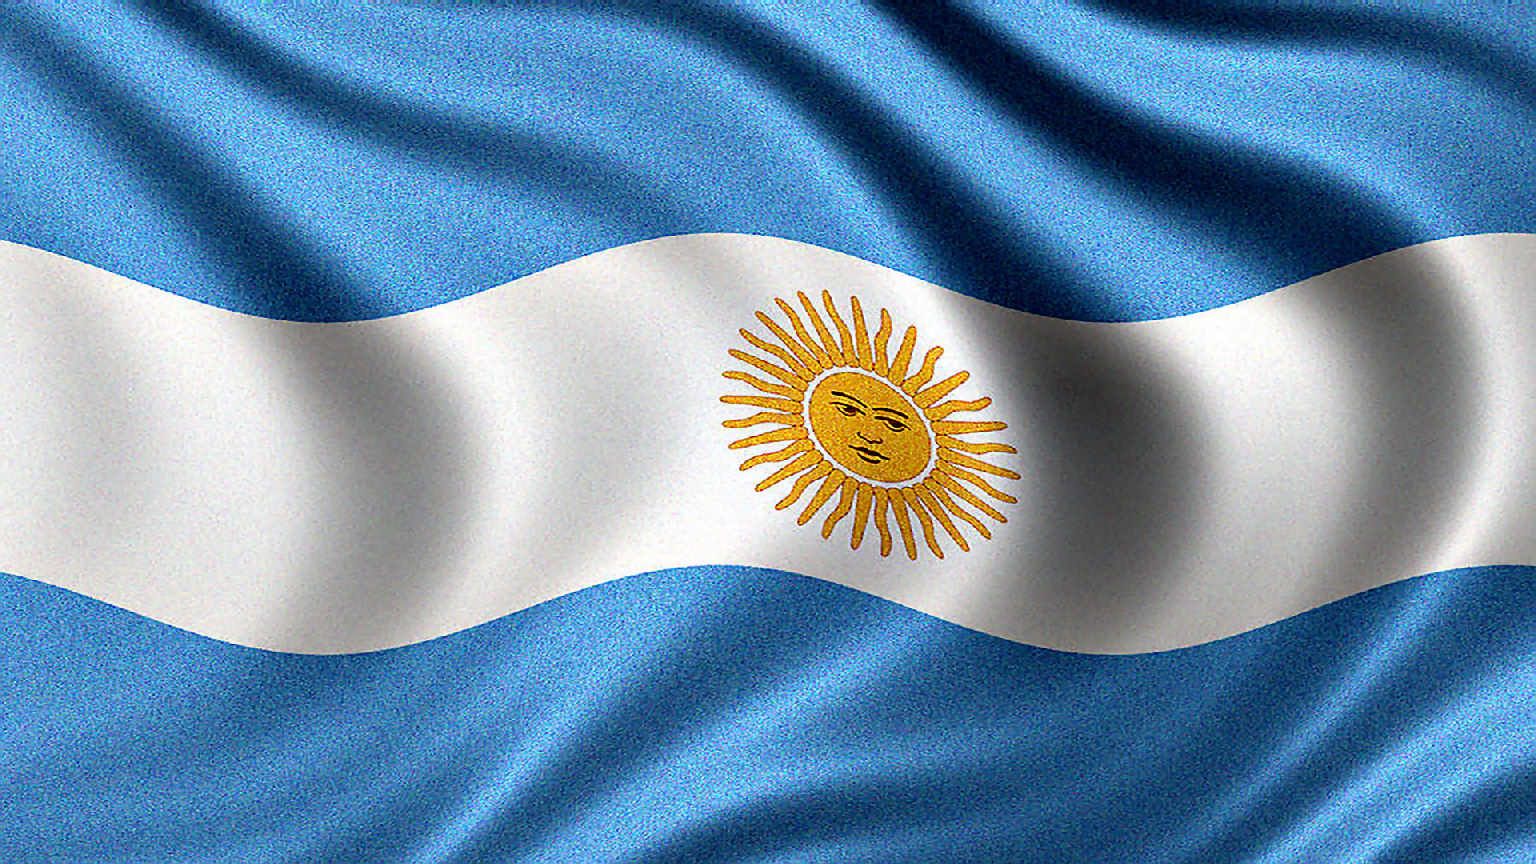 Bandera De Argentina Imágenes Historia Evolución Y Significado